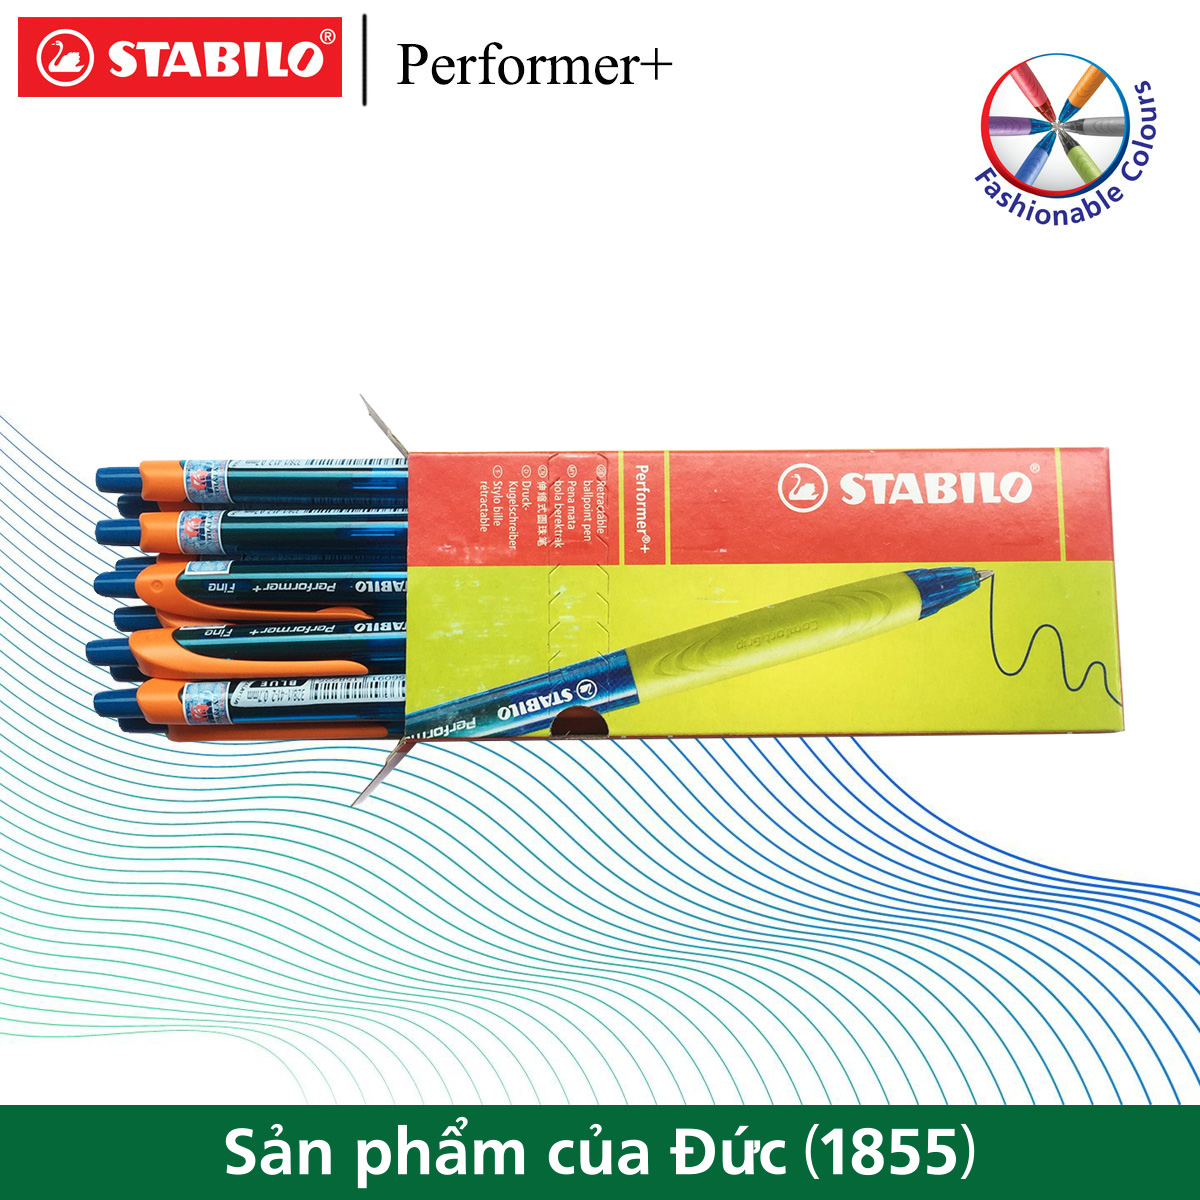 Hộp 10 cây bút bi STABILO Performer+ 328XF 0.5mm